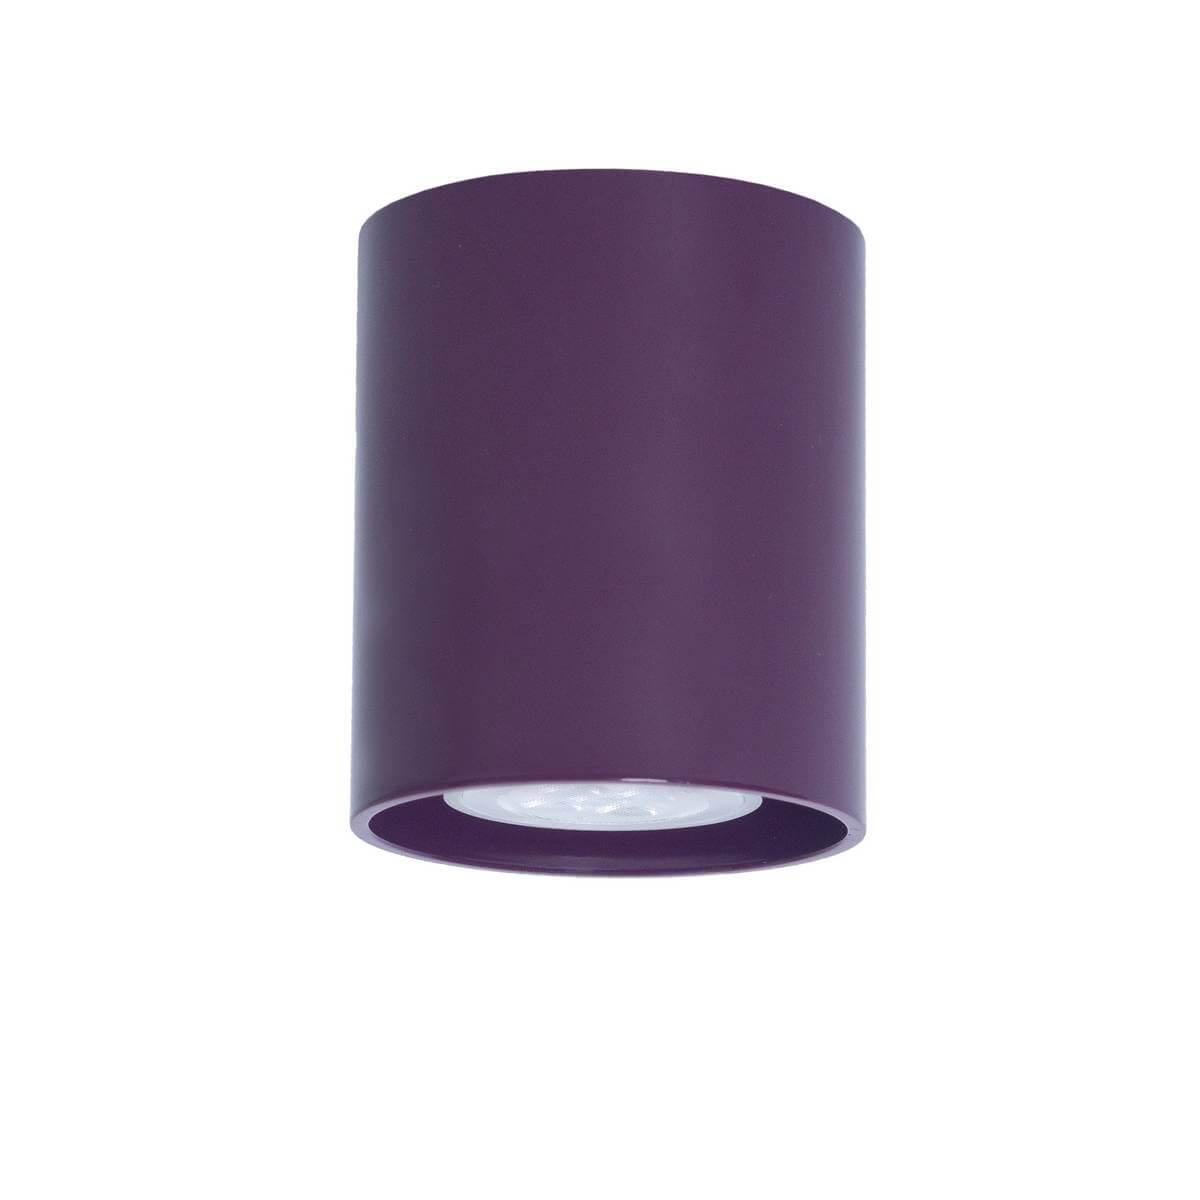 Потолочный светильник TopDecor Tubo8 P1 23 светильник садовый плавающий uniel waterlily 17x16x6 см фиолетовый света фиолетовый